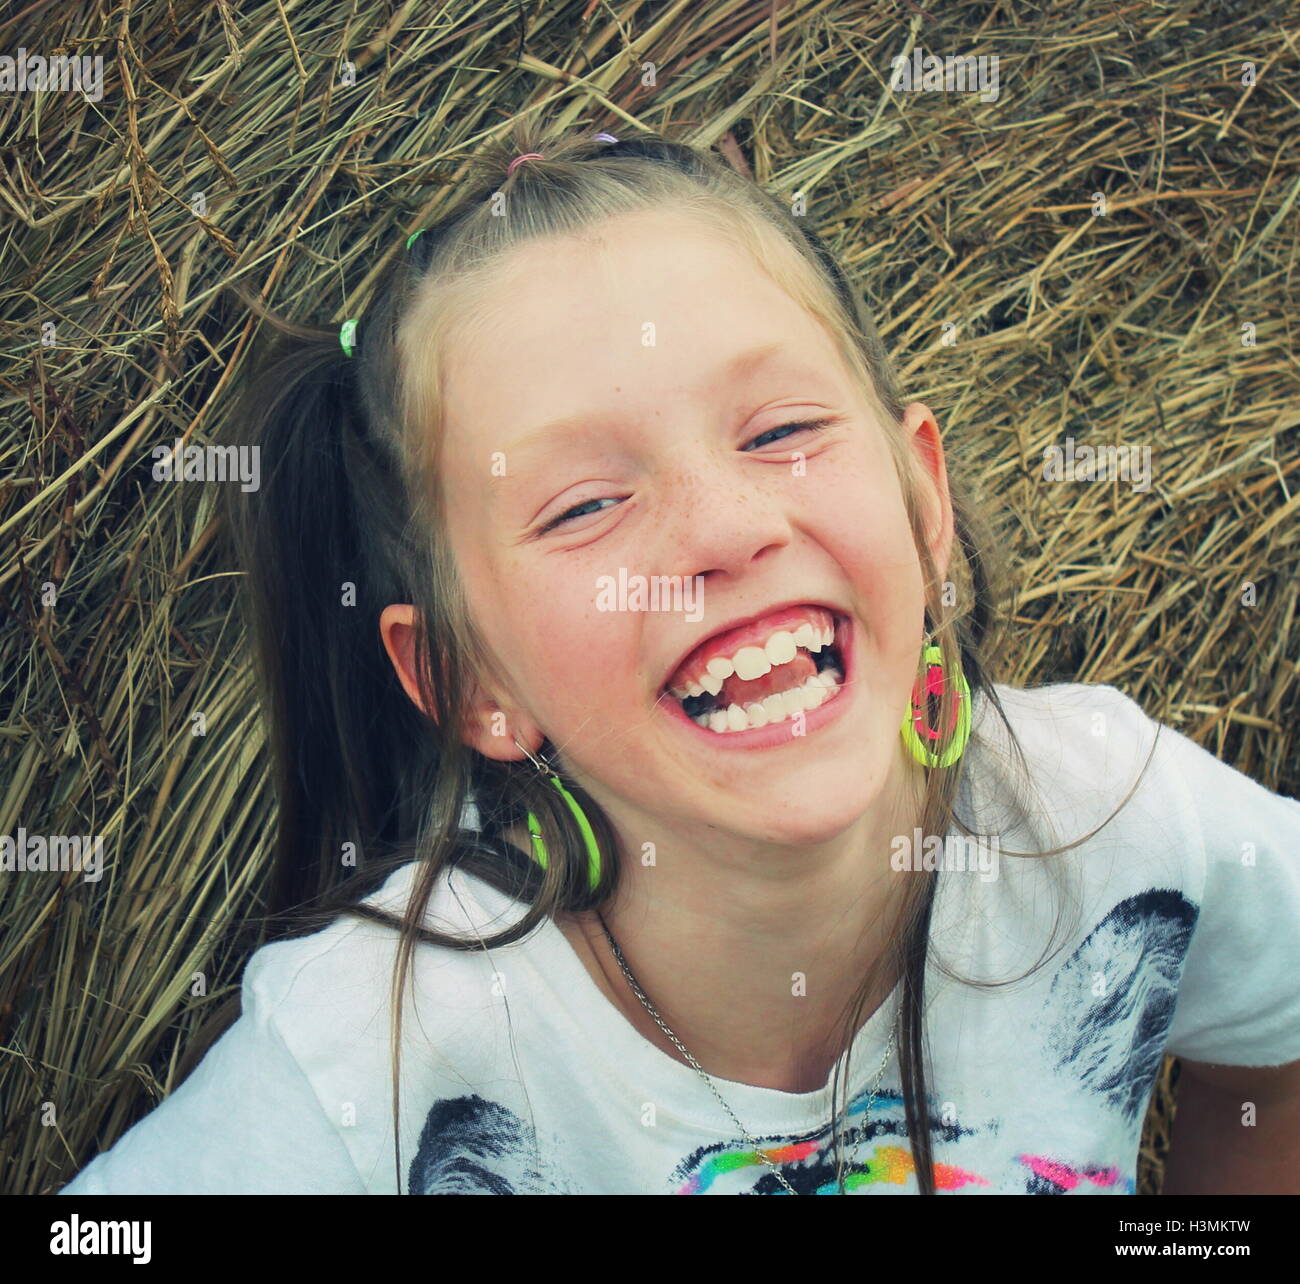 Giovane ragazza bionda sorridente scherzosamente durante la riproduzione sulla balla di fieno Foto Stock